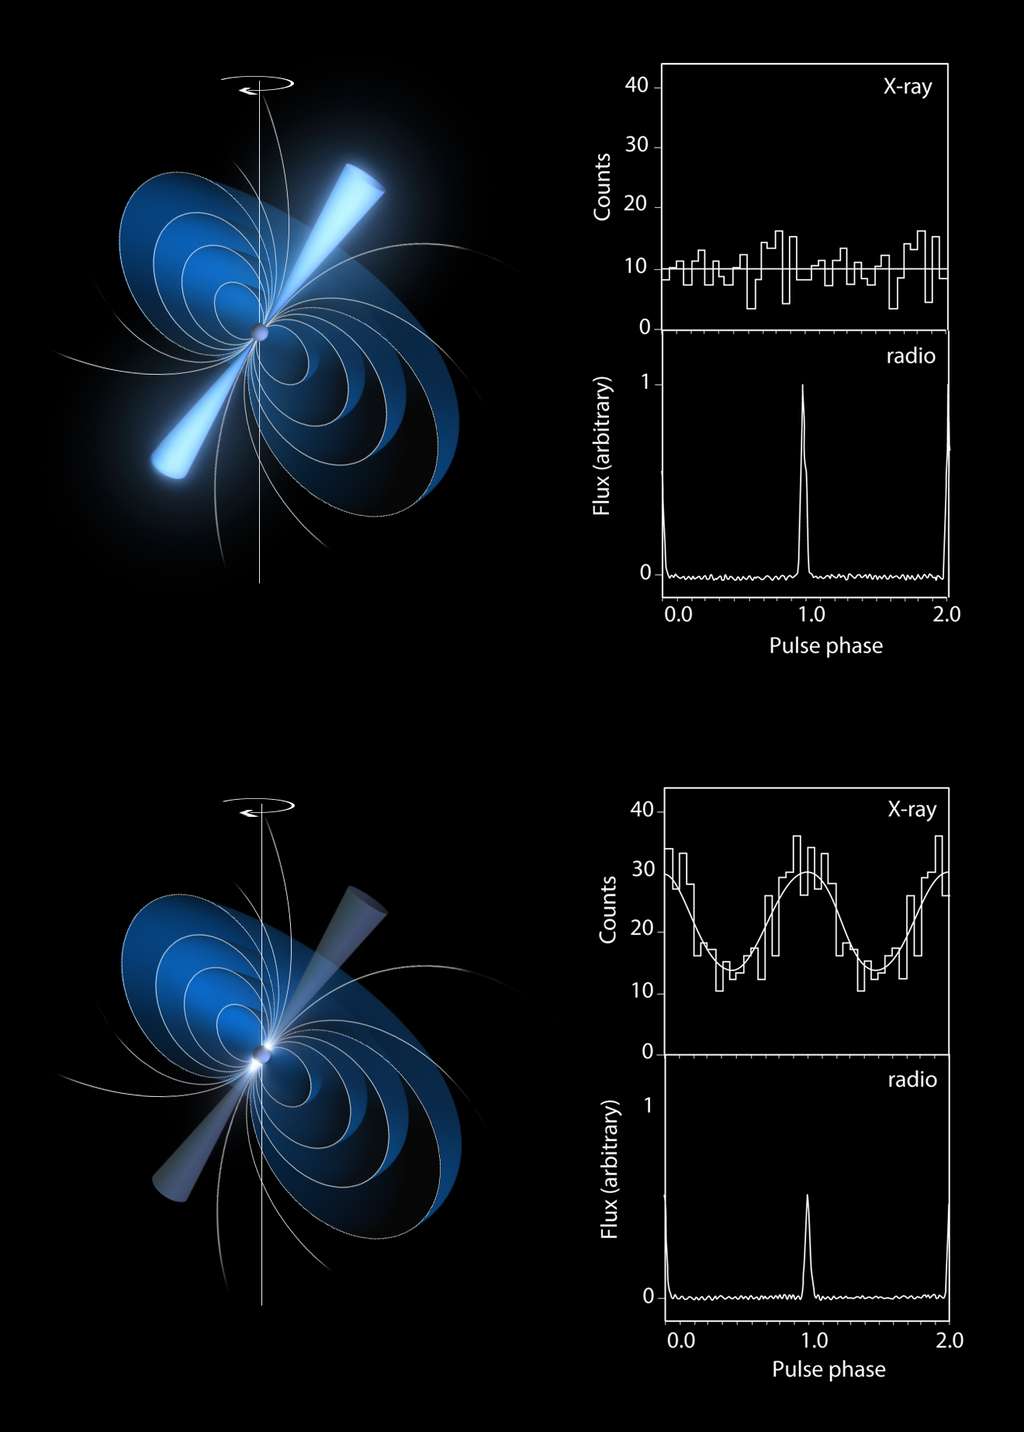 Le pulsar PSR B0943+10 a de quoi surprendre : lorsque le signal radio est fort et organisé, le signal en rayons X est faible. Et quand l’émission radio devient faible, les rayons X s’intensifient. © Observatoire de Paris